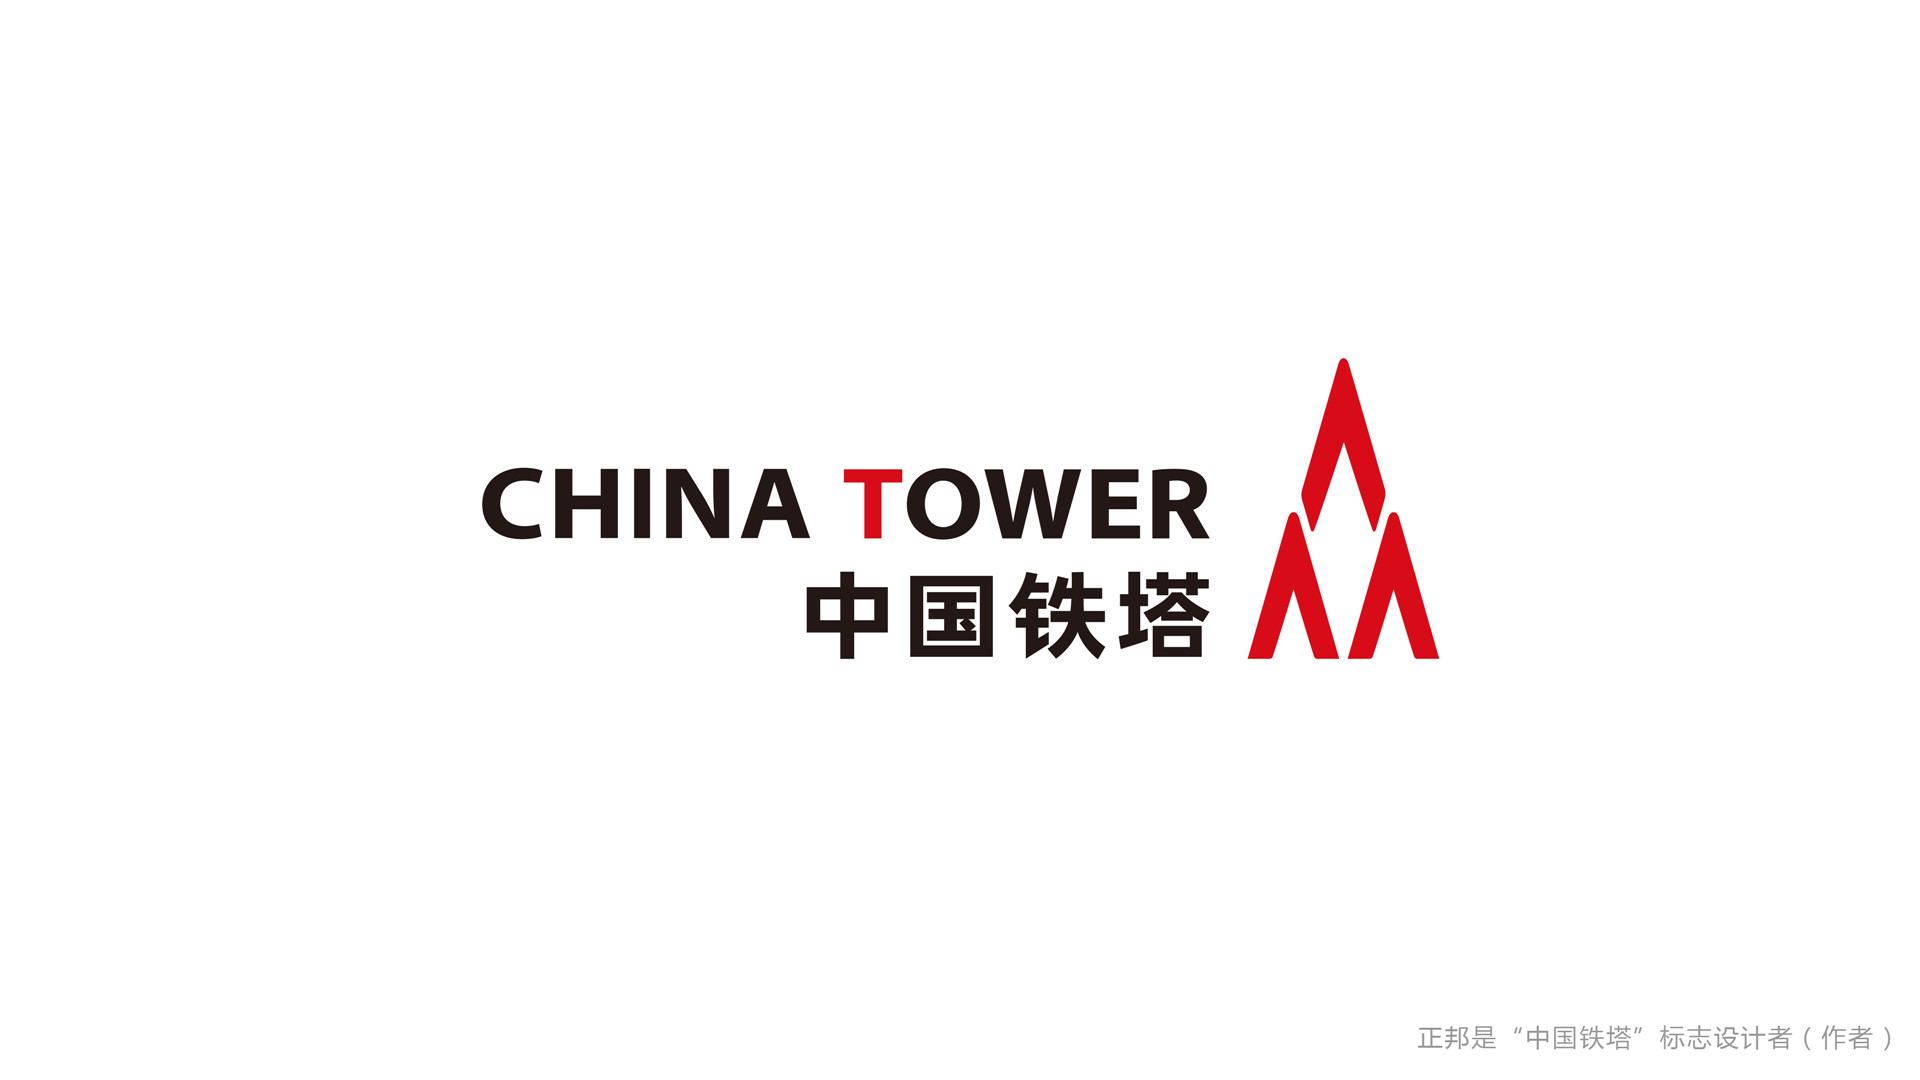 冒用昔日上市公司名义 冒充中国铁塔合作伙伴开展工作